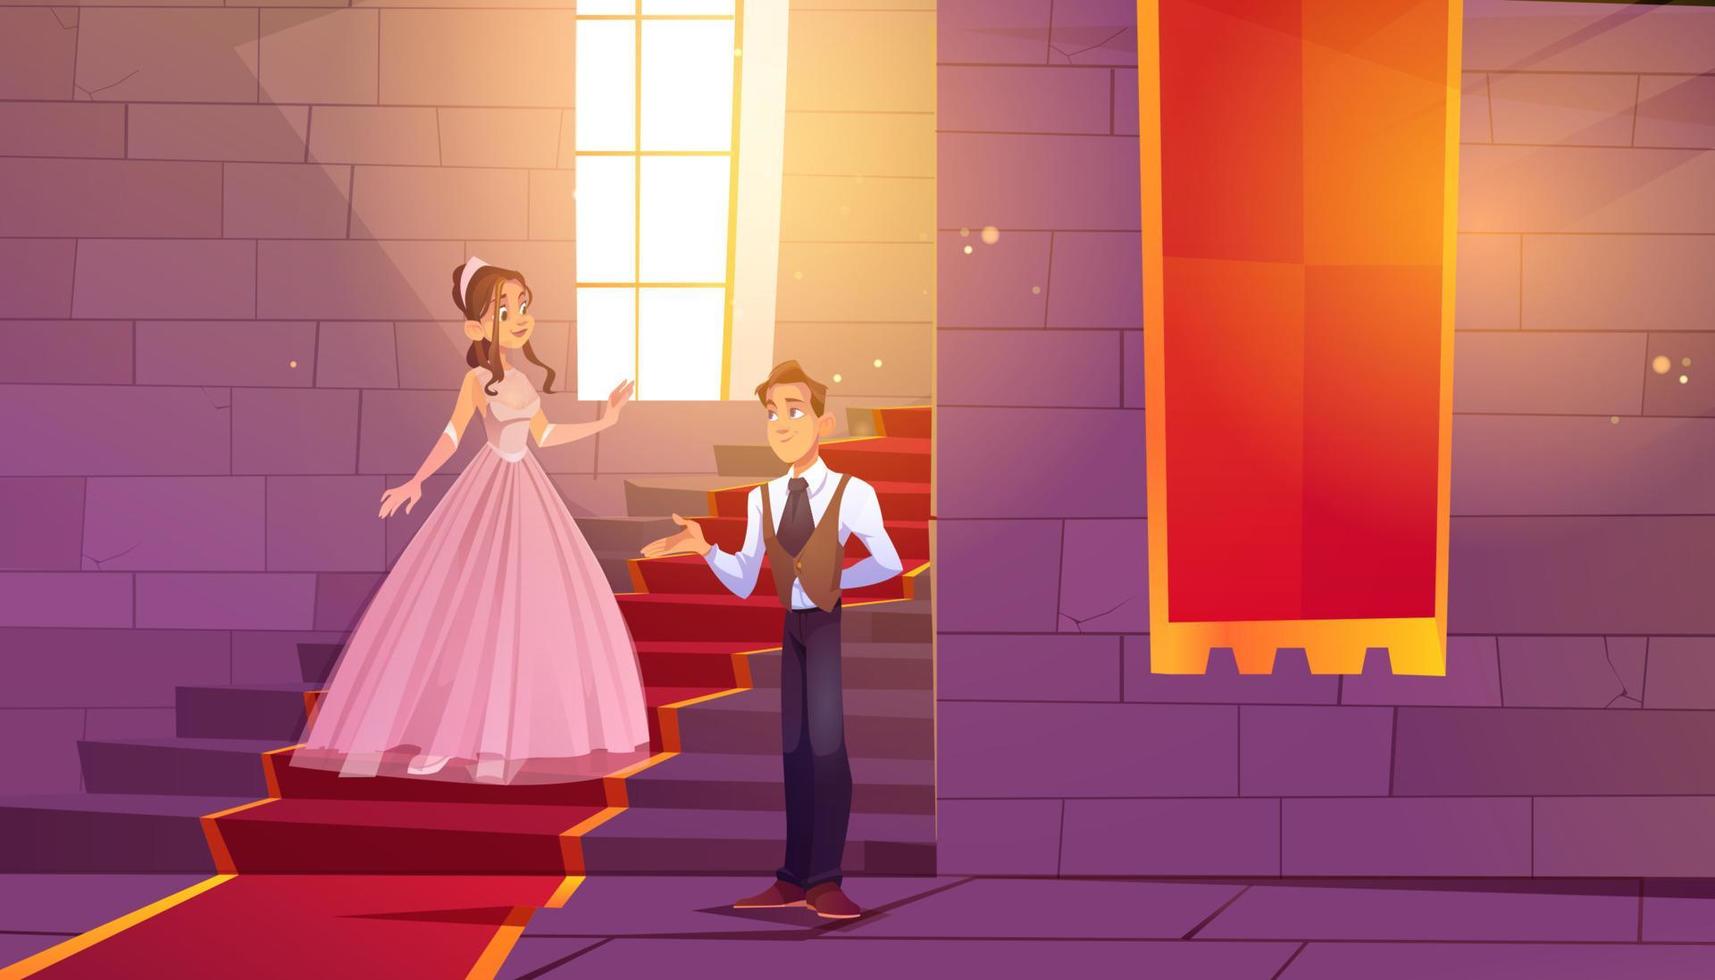 el príncipe invita a la princesa a bailar en el salón del castillo vector